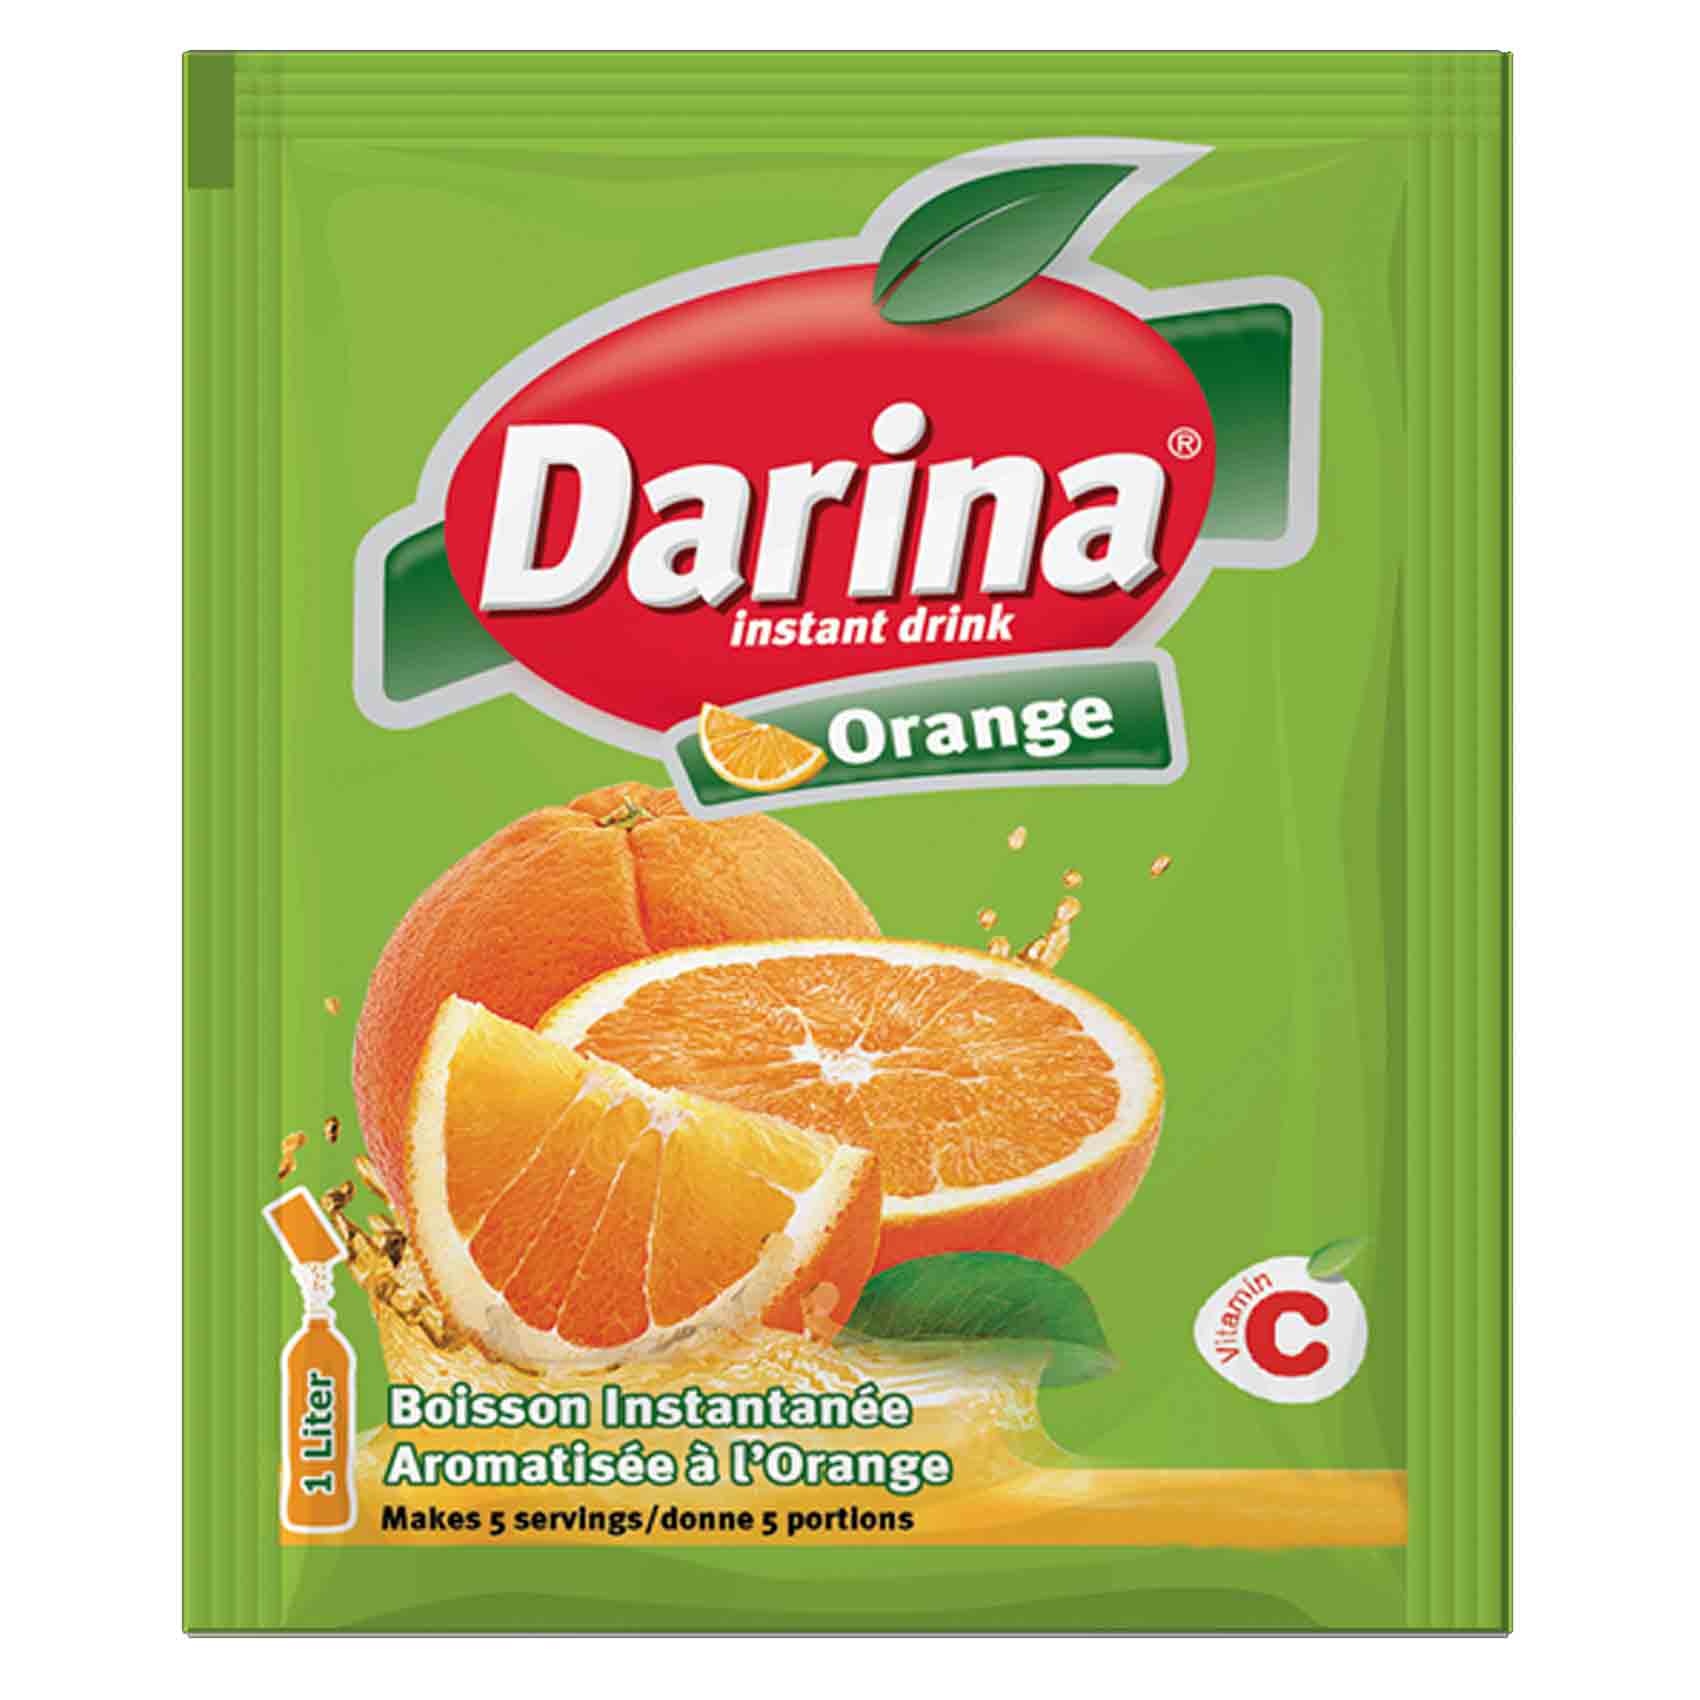 Darina Instant Drink Powder Orange Flavor 35 Gram